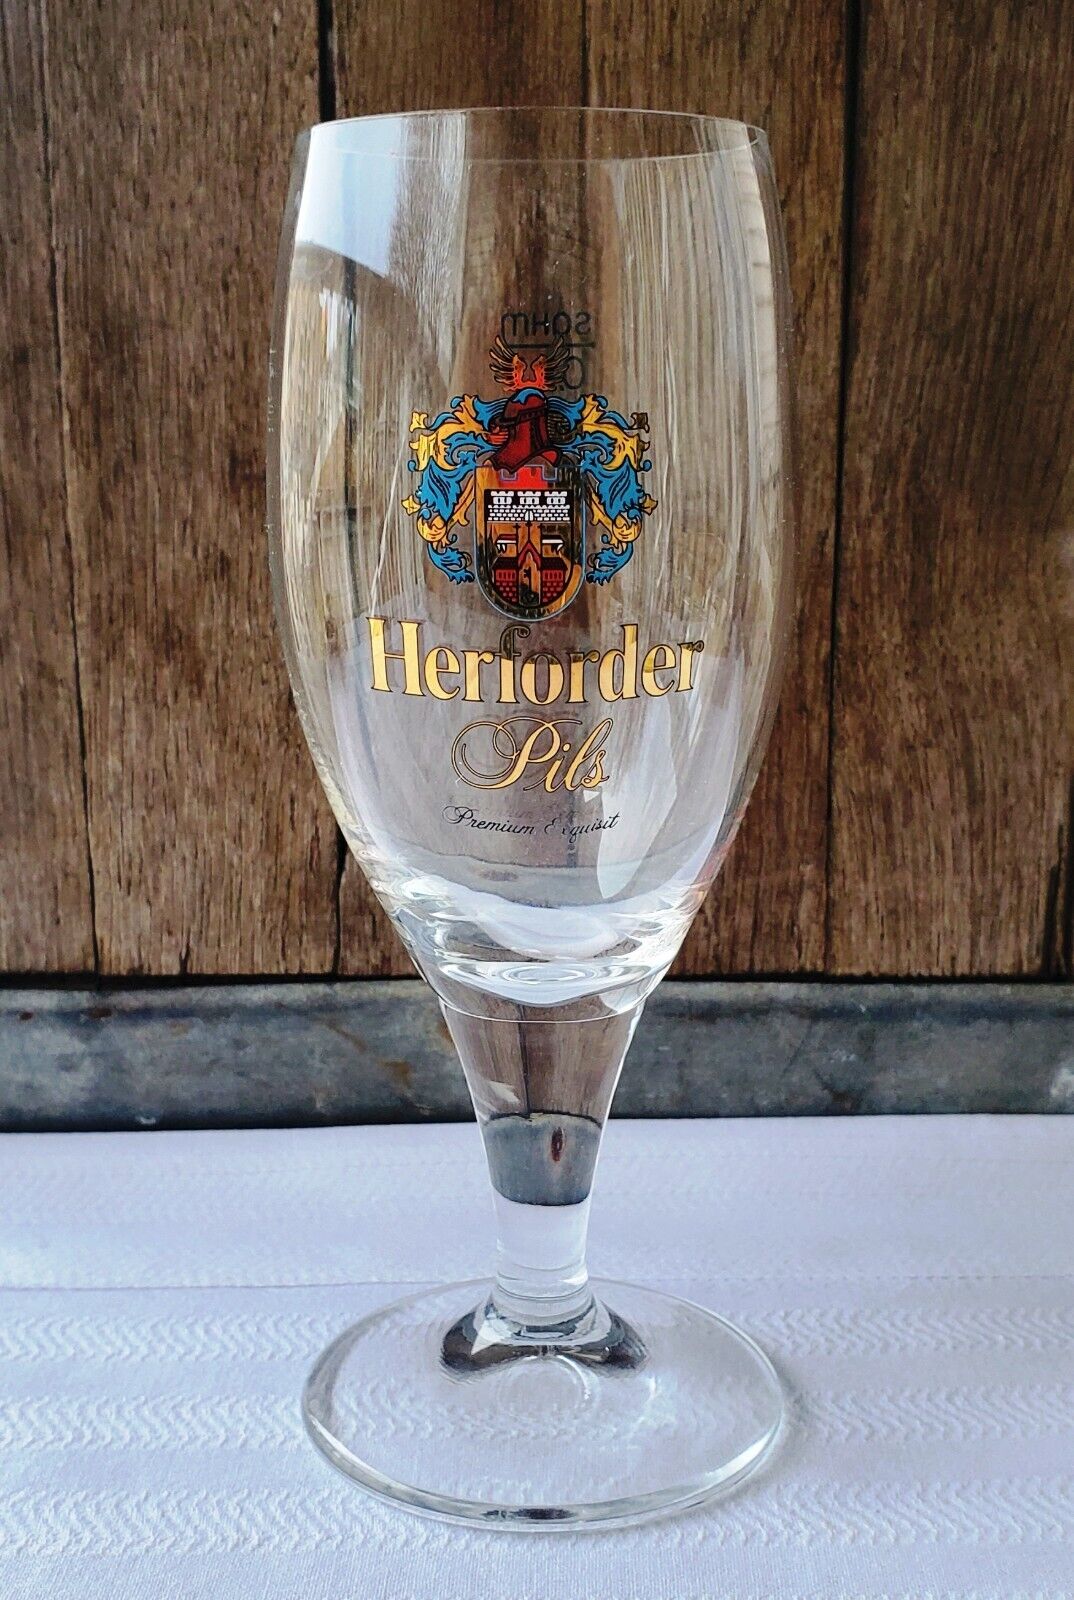 Herforder Pils Germany 0.2 Liter Pilsner Beer Glass